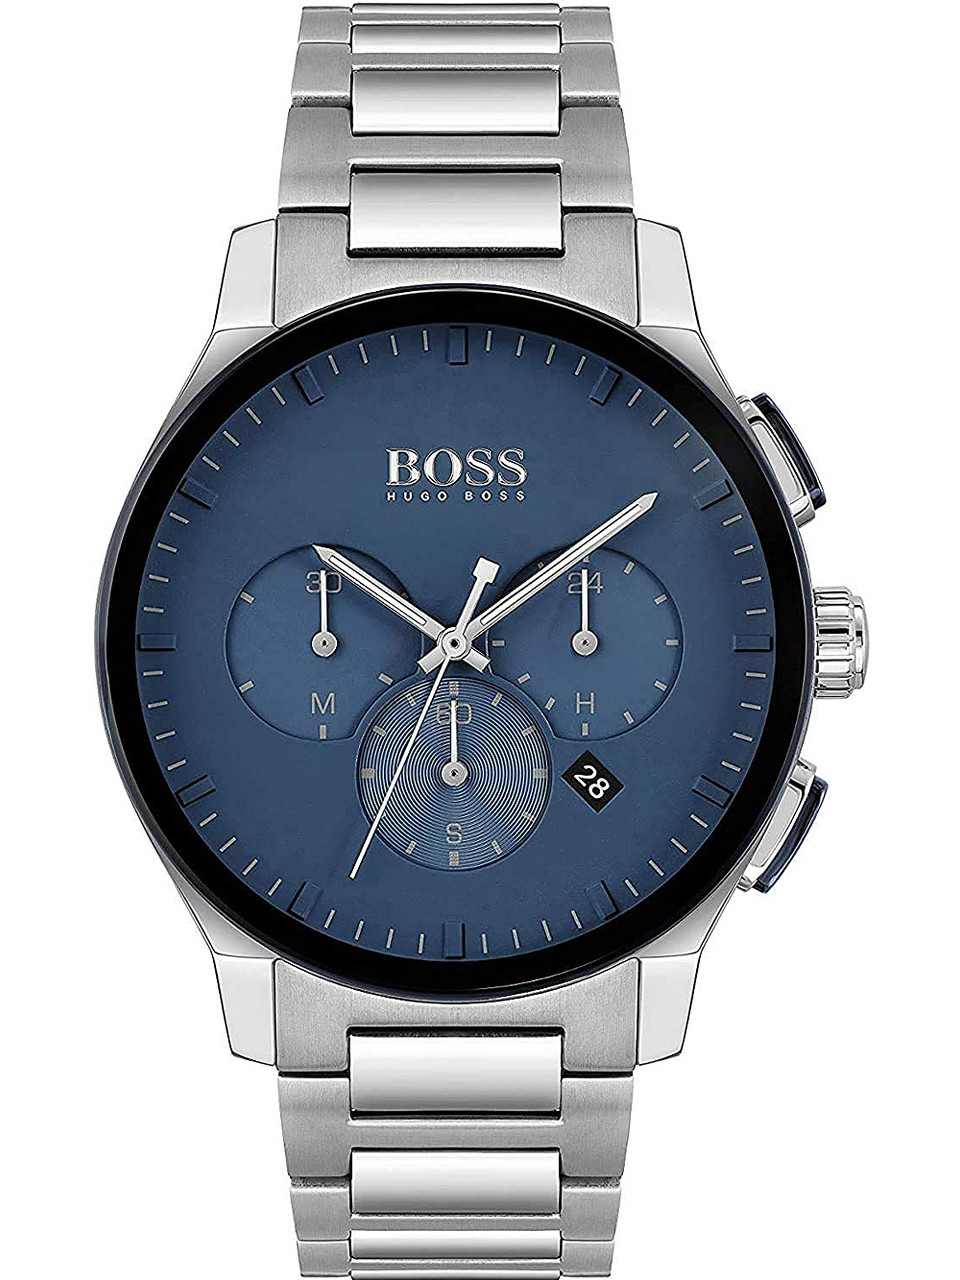 Hugo Boss 1513763 Peak chrono owlica Watches | - Genuine 3ATM 44mm